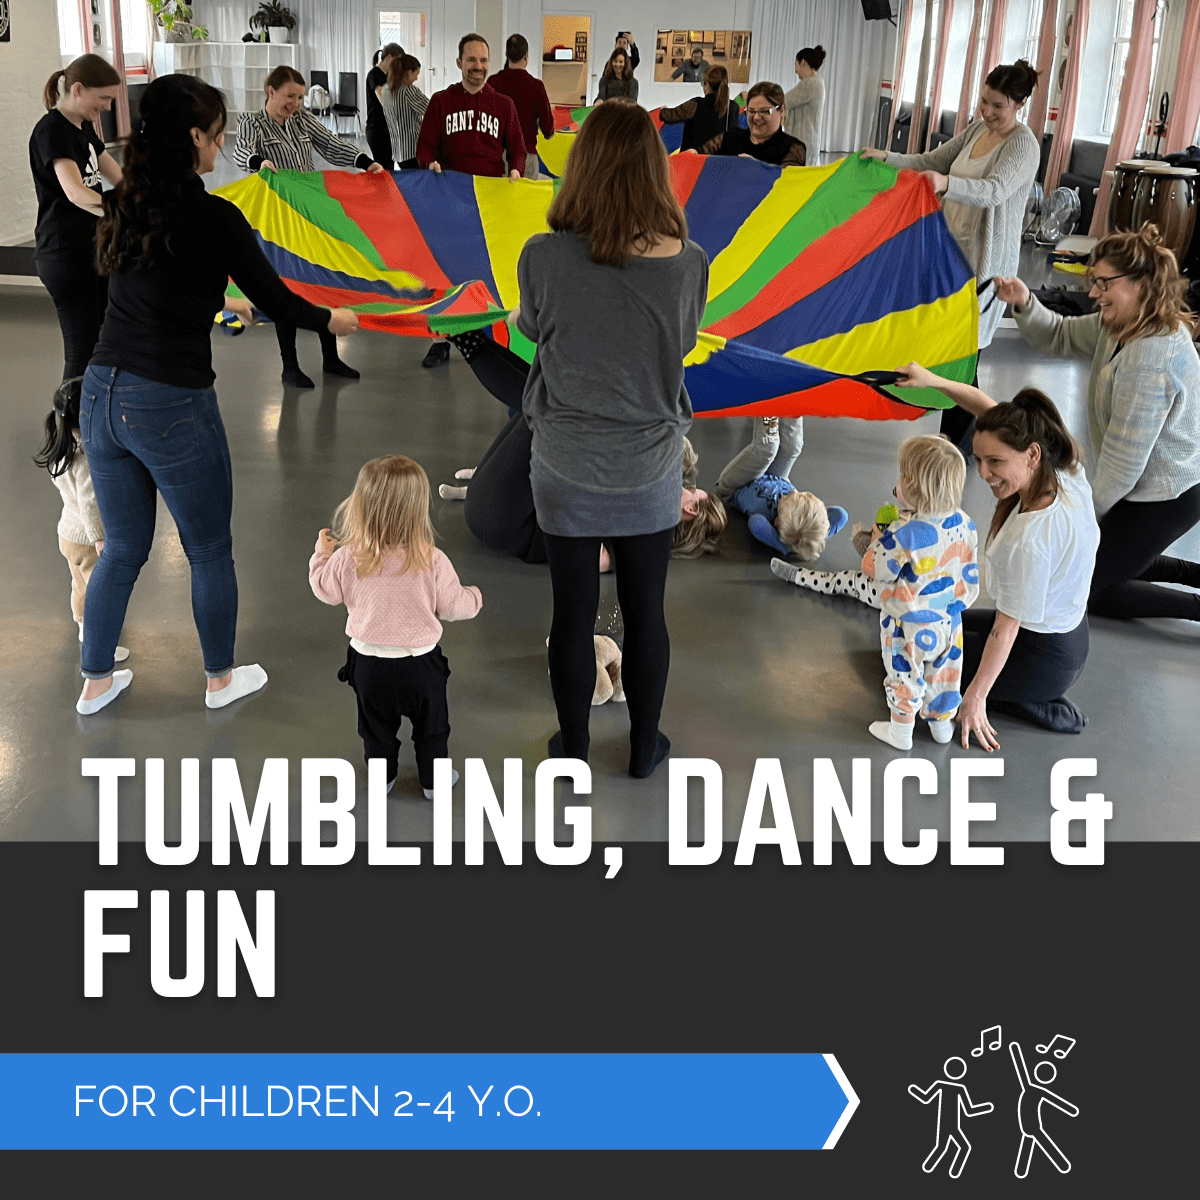 Tumlesjov og Dans, Tumbling, Dance and fun, dans for børn, dance for kids